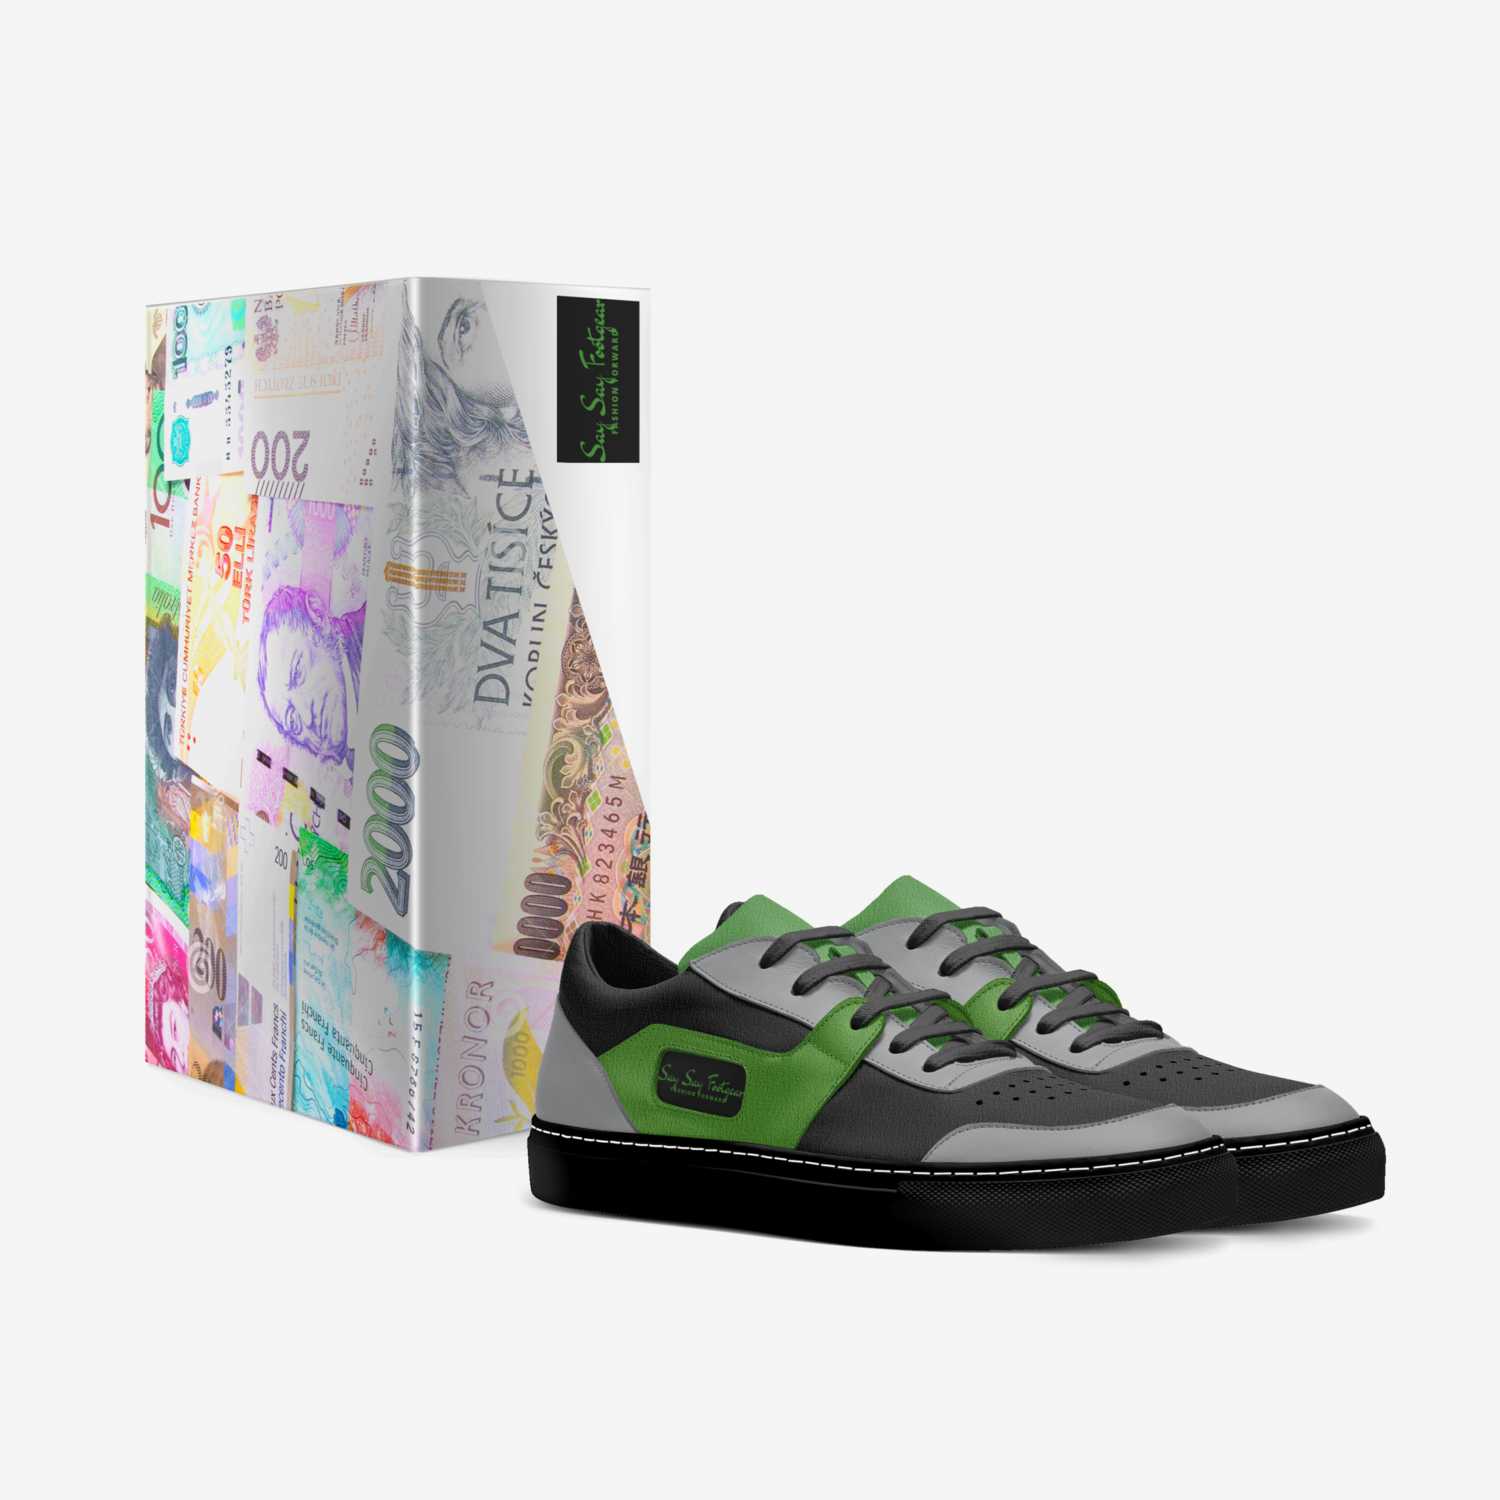 Say Say Footgear custom made in Italy shoes by Isaiah H Thomas | Box view